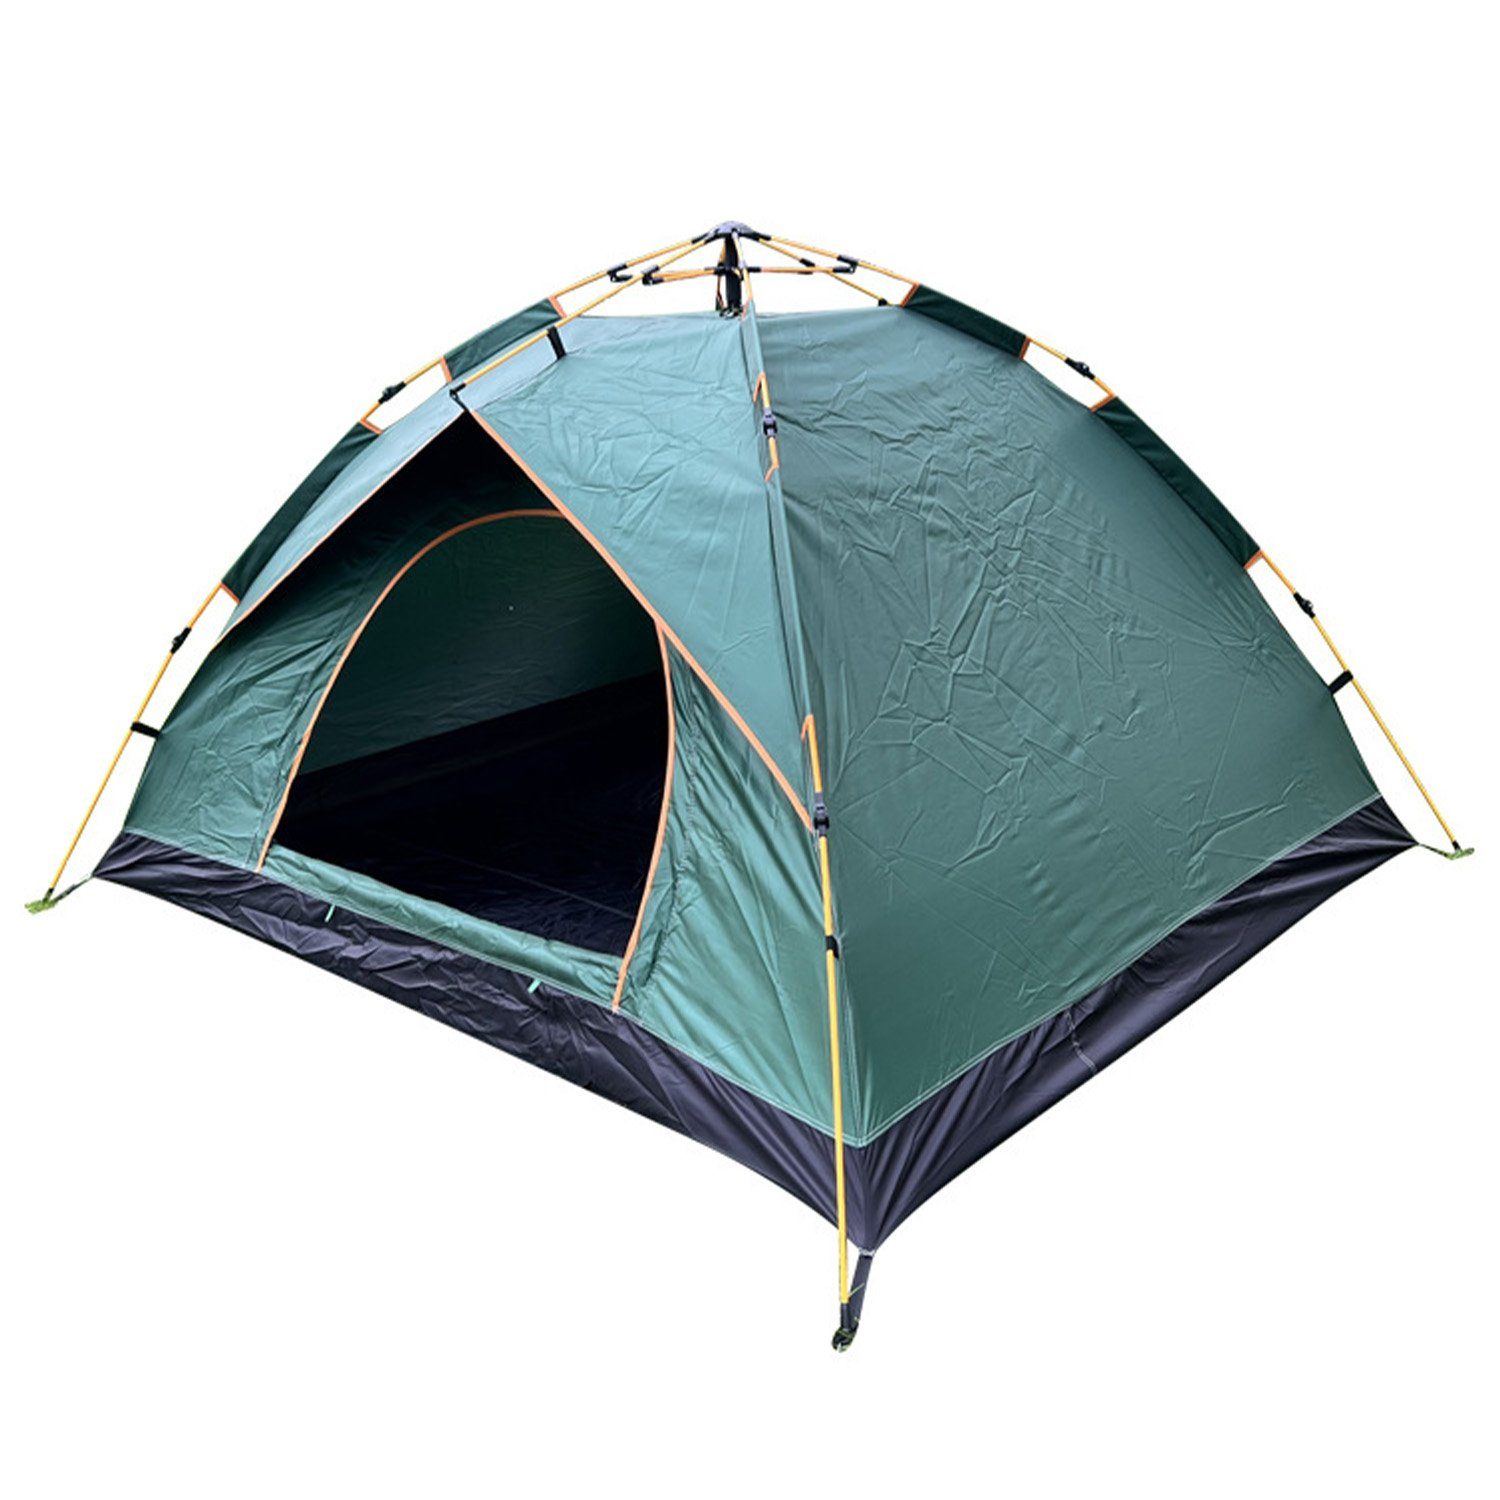 FIDDY Vorzelt Zelt Outdoor Camping tragbares, faltbares, schnell zu öffnendes Zelt, Personen: 3, Beach Park Camping Komplettset verdickt und regenfest